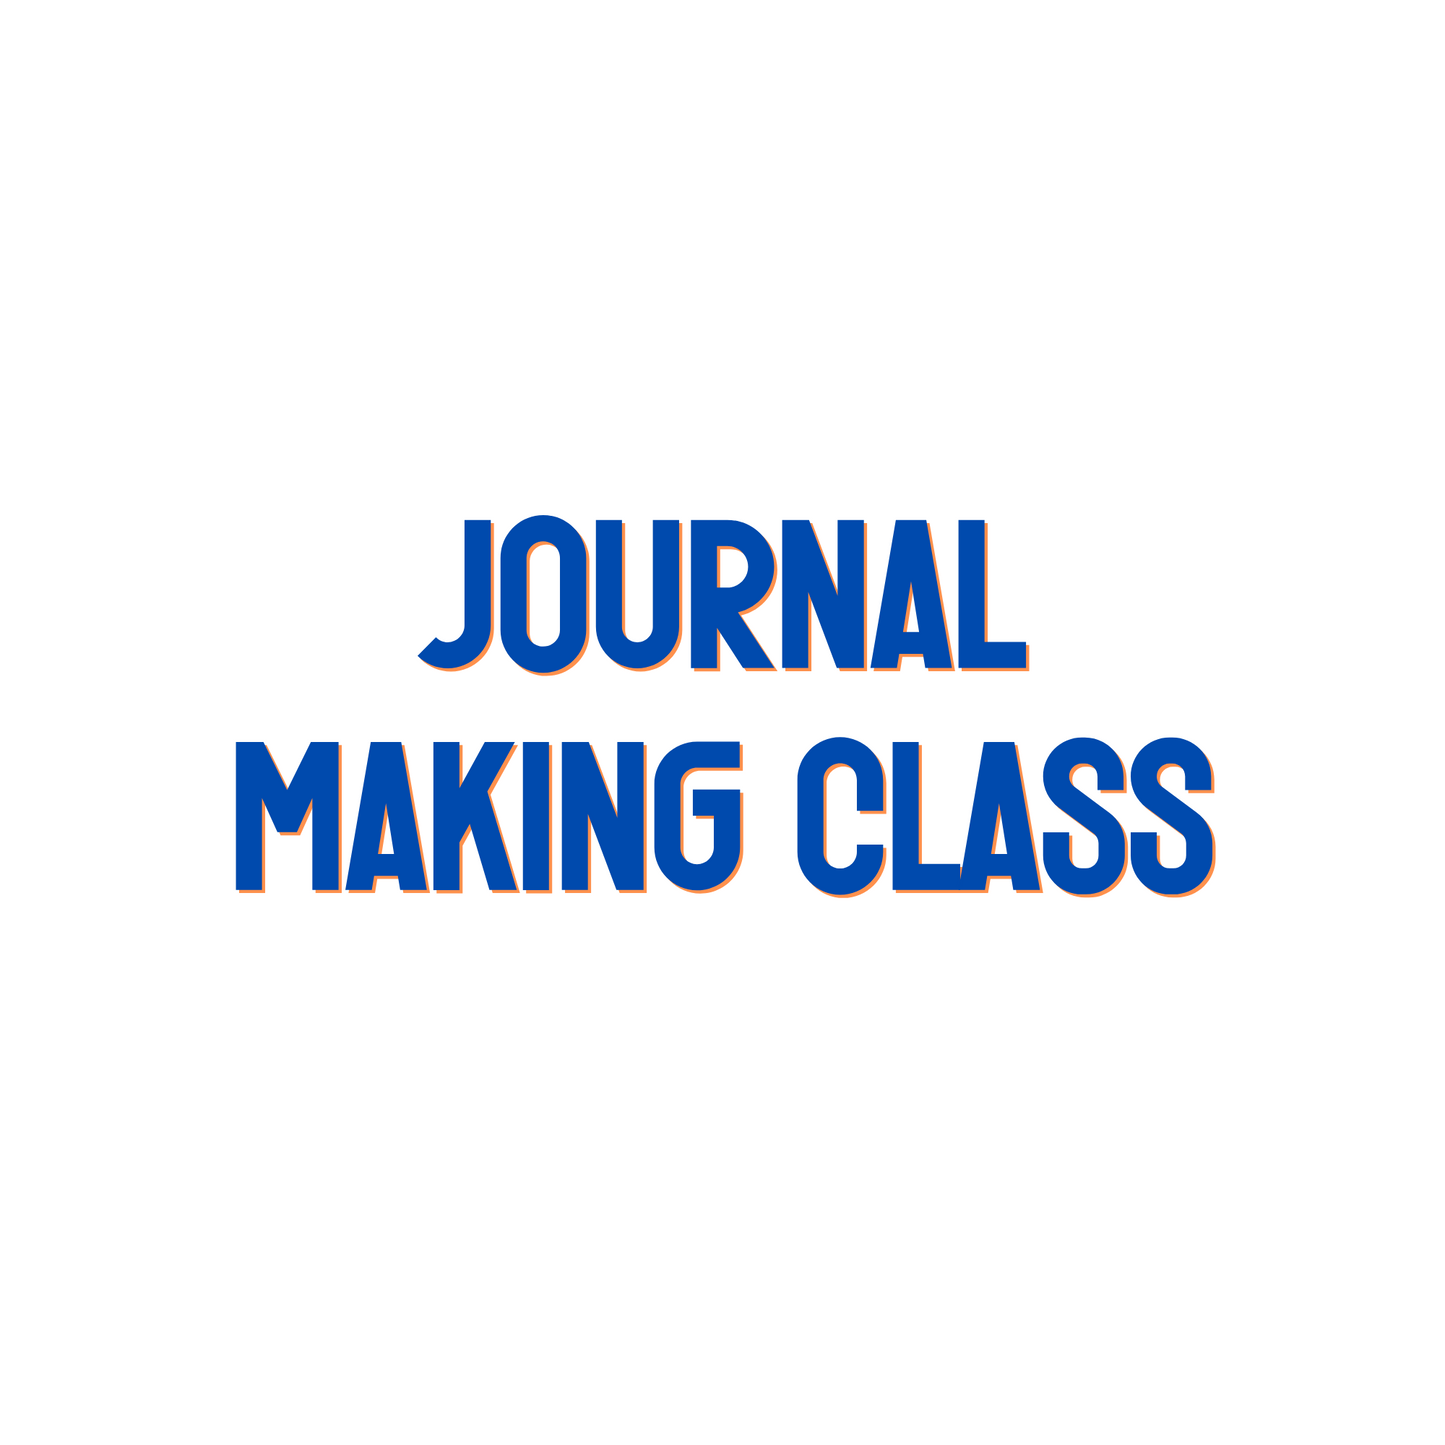 Journal Making Class